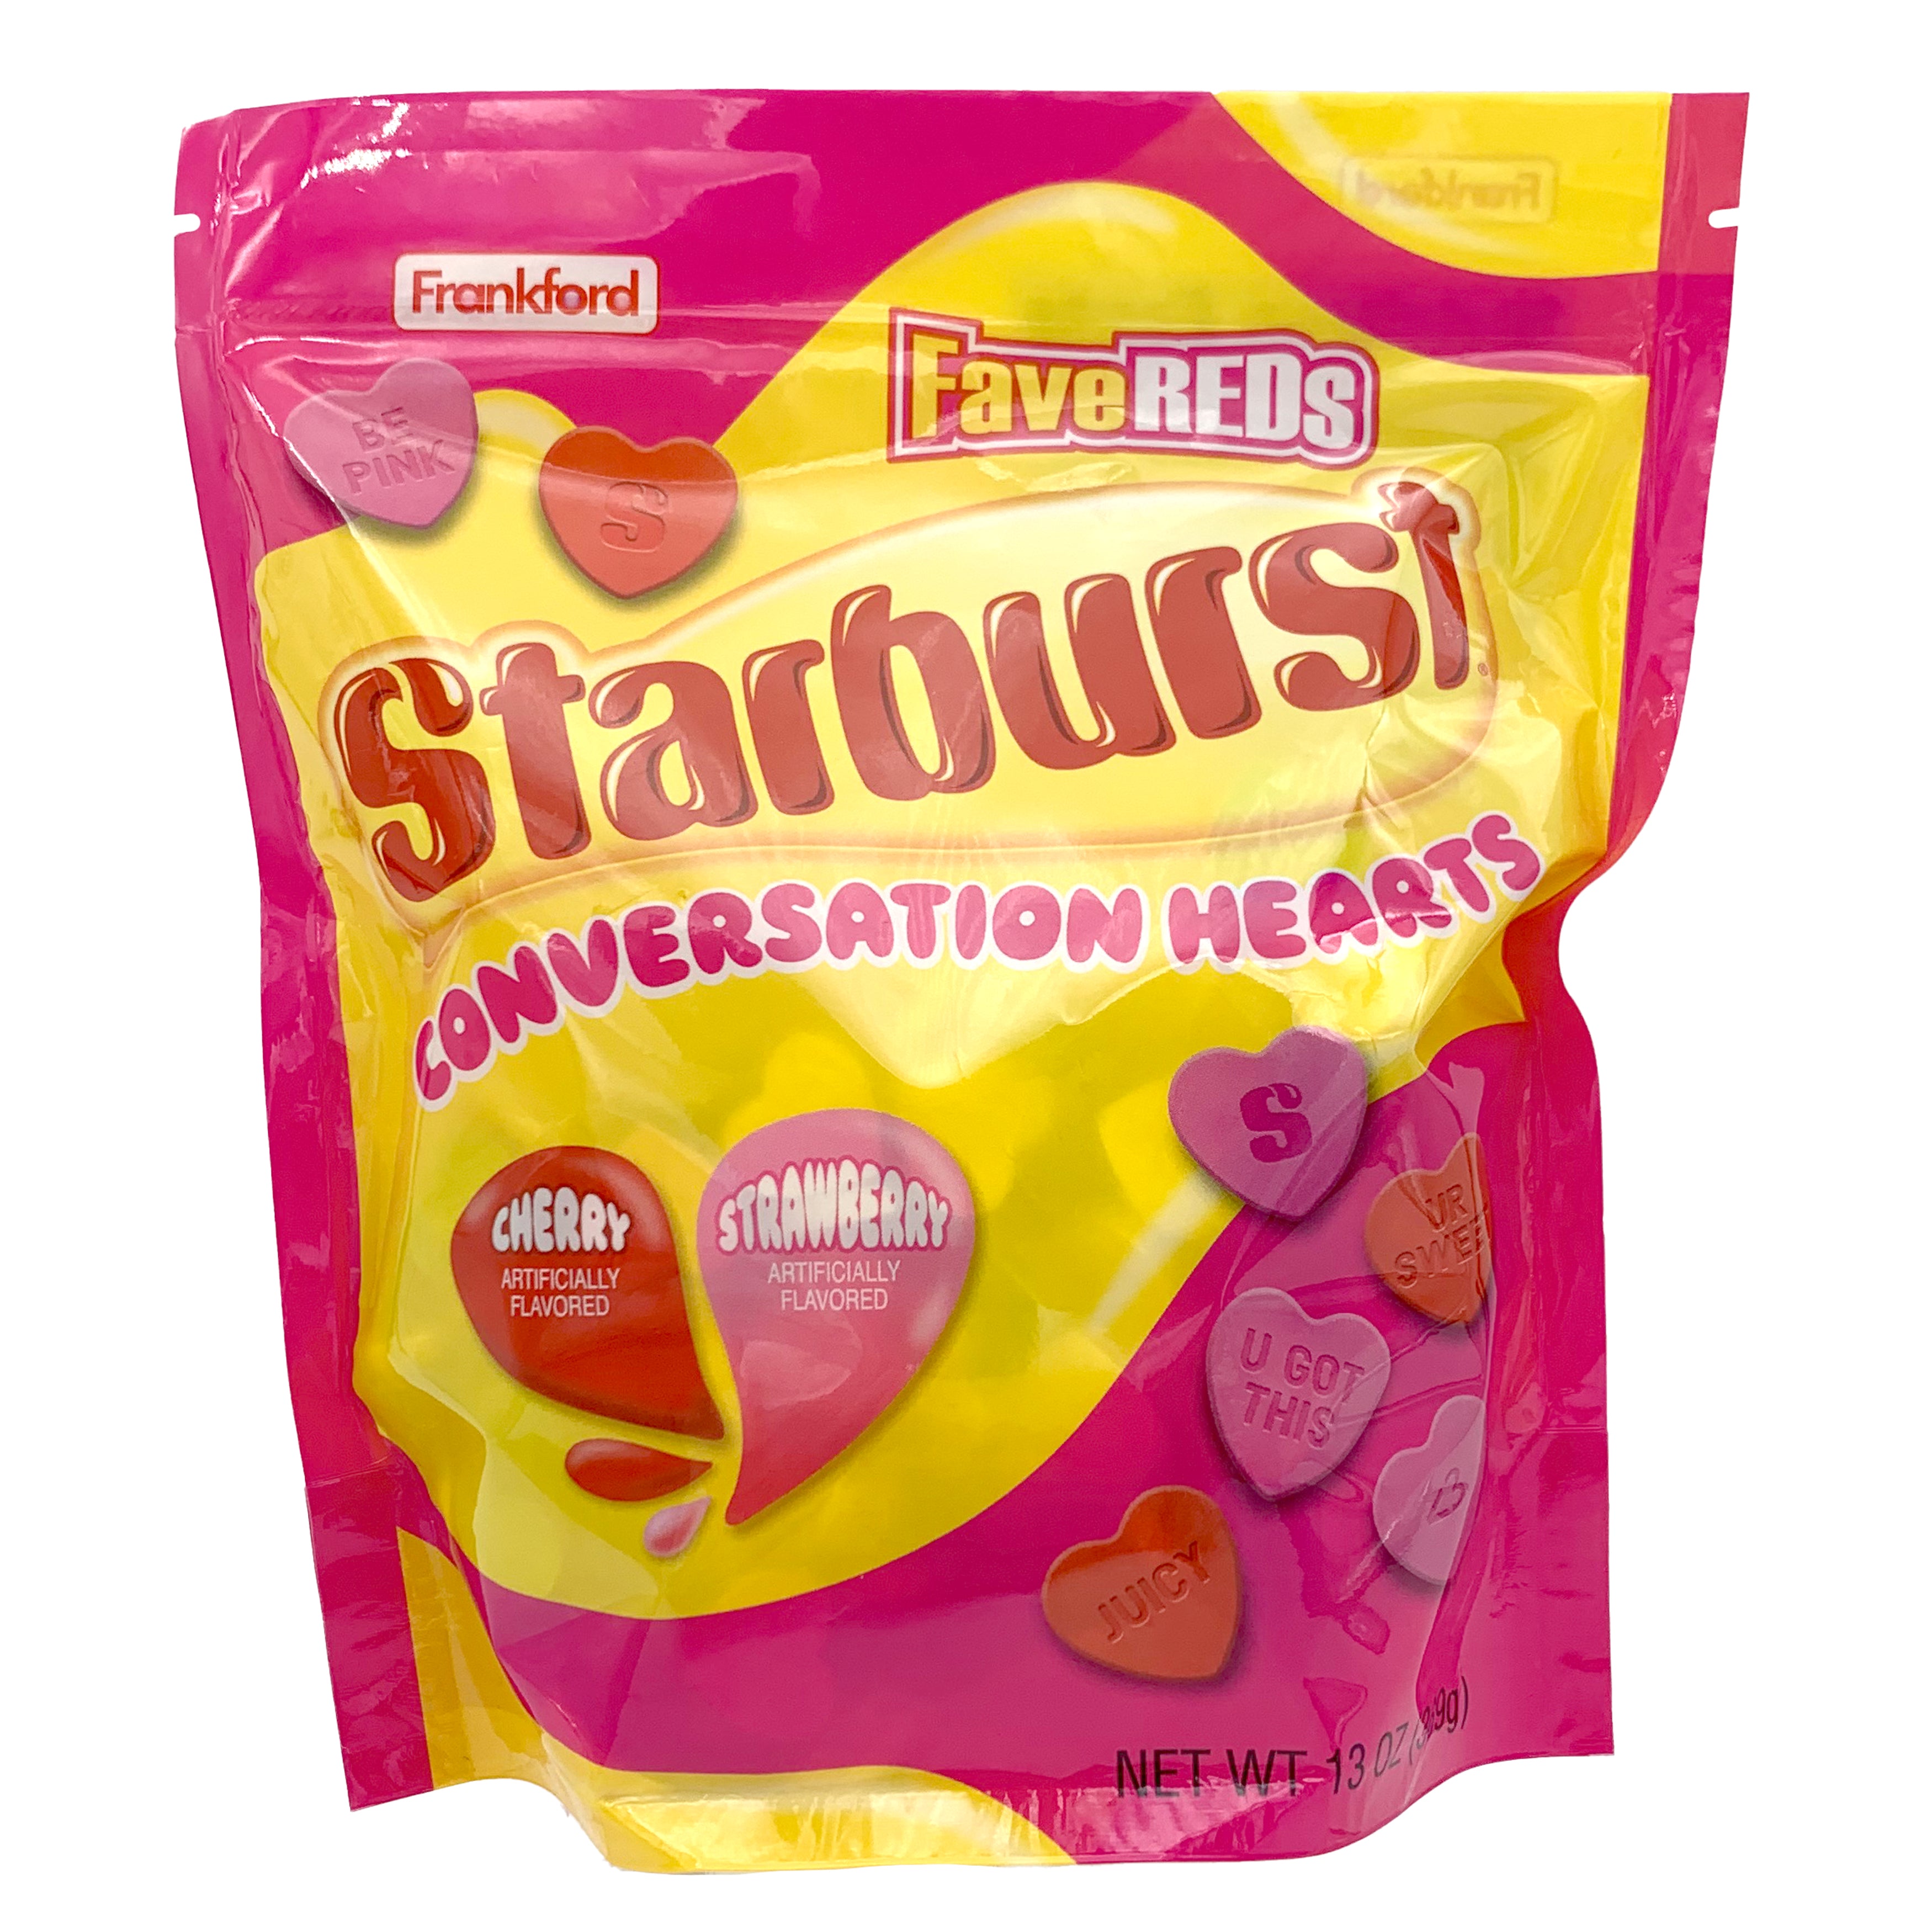 Starburst Conversation Heart Valentine's Day Bag, 2 Pack